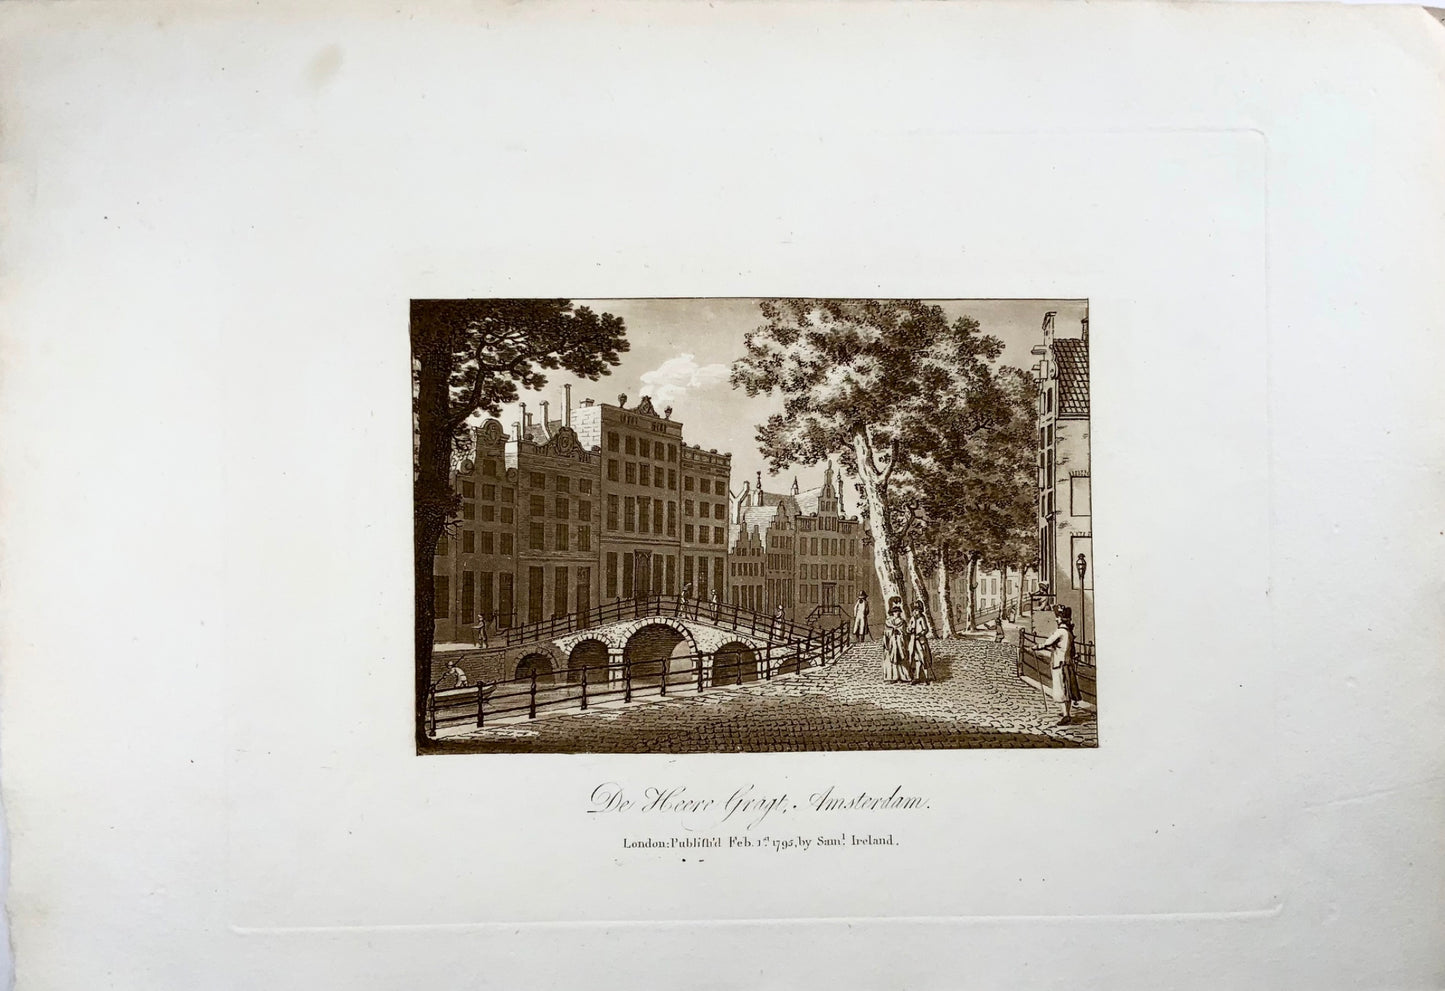 1795 Amsterdam, acquatinta seppia olandese, edizione cartacea di grandi dimensioni,